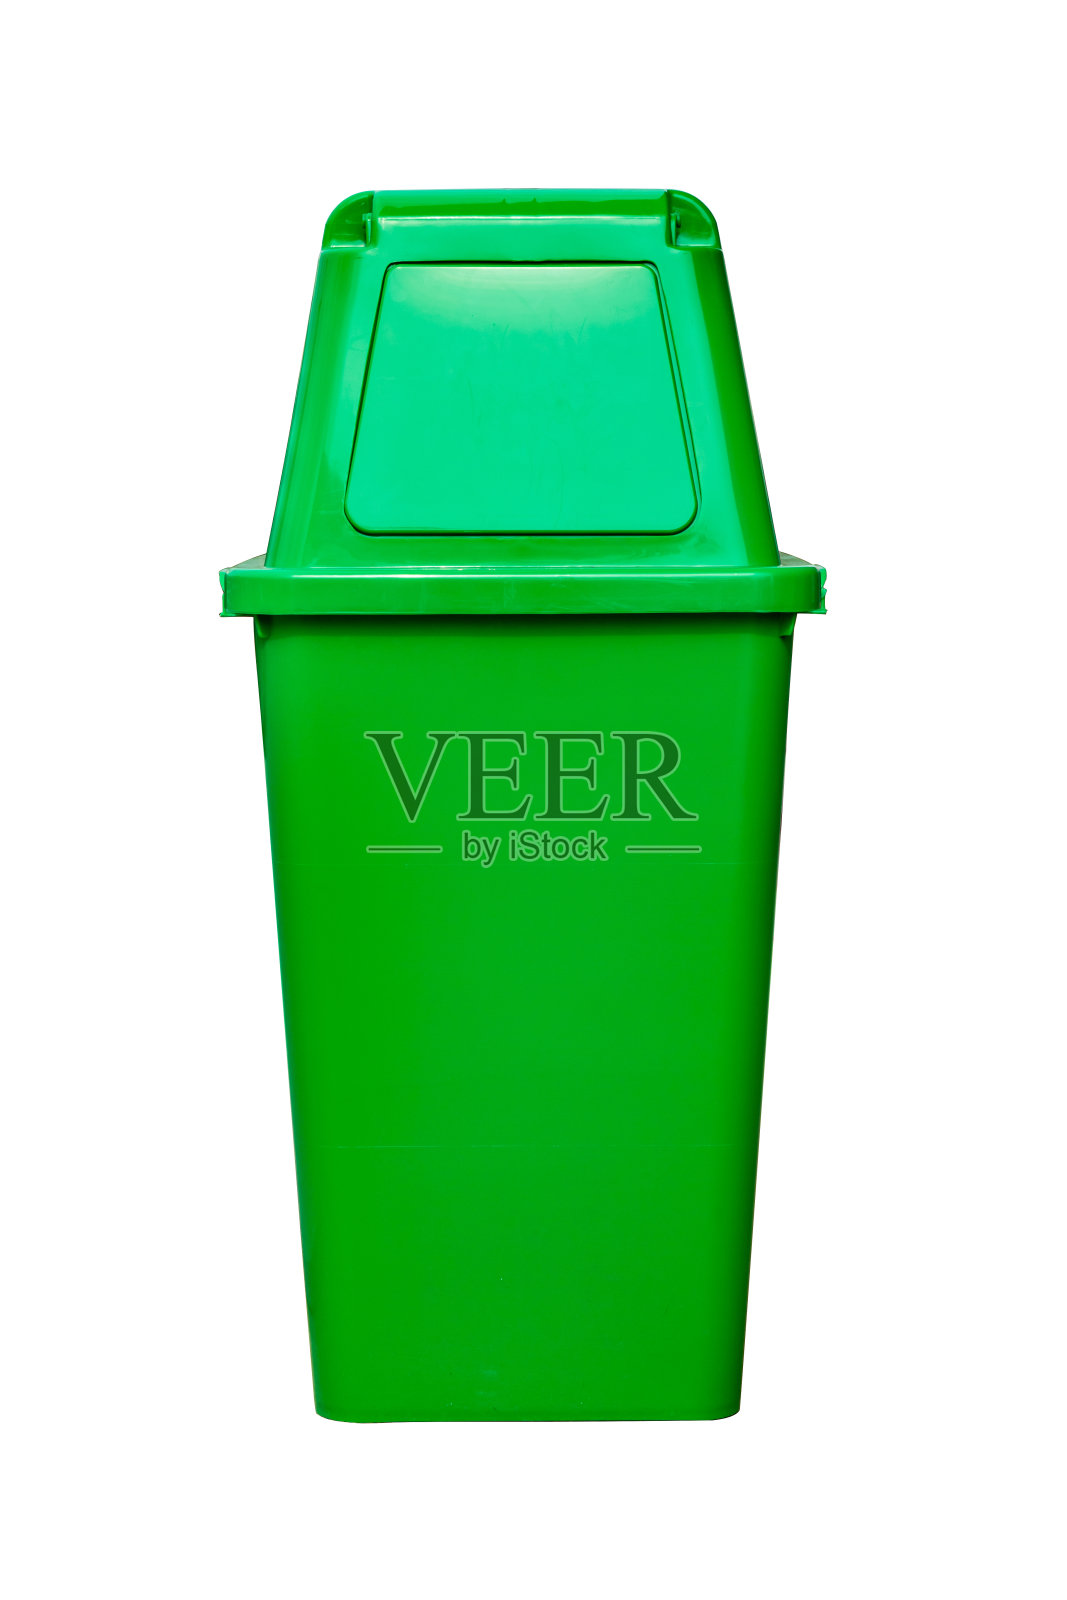 绿色塑料垃圾桶照片摄影图片